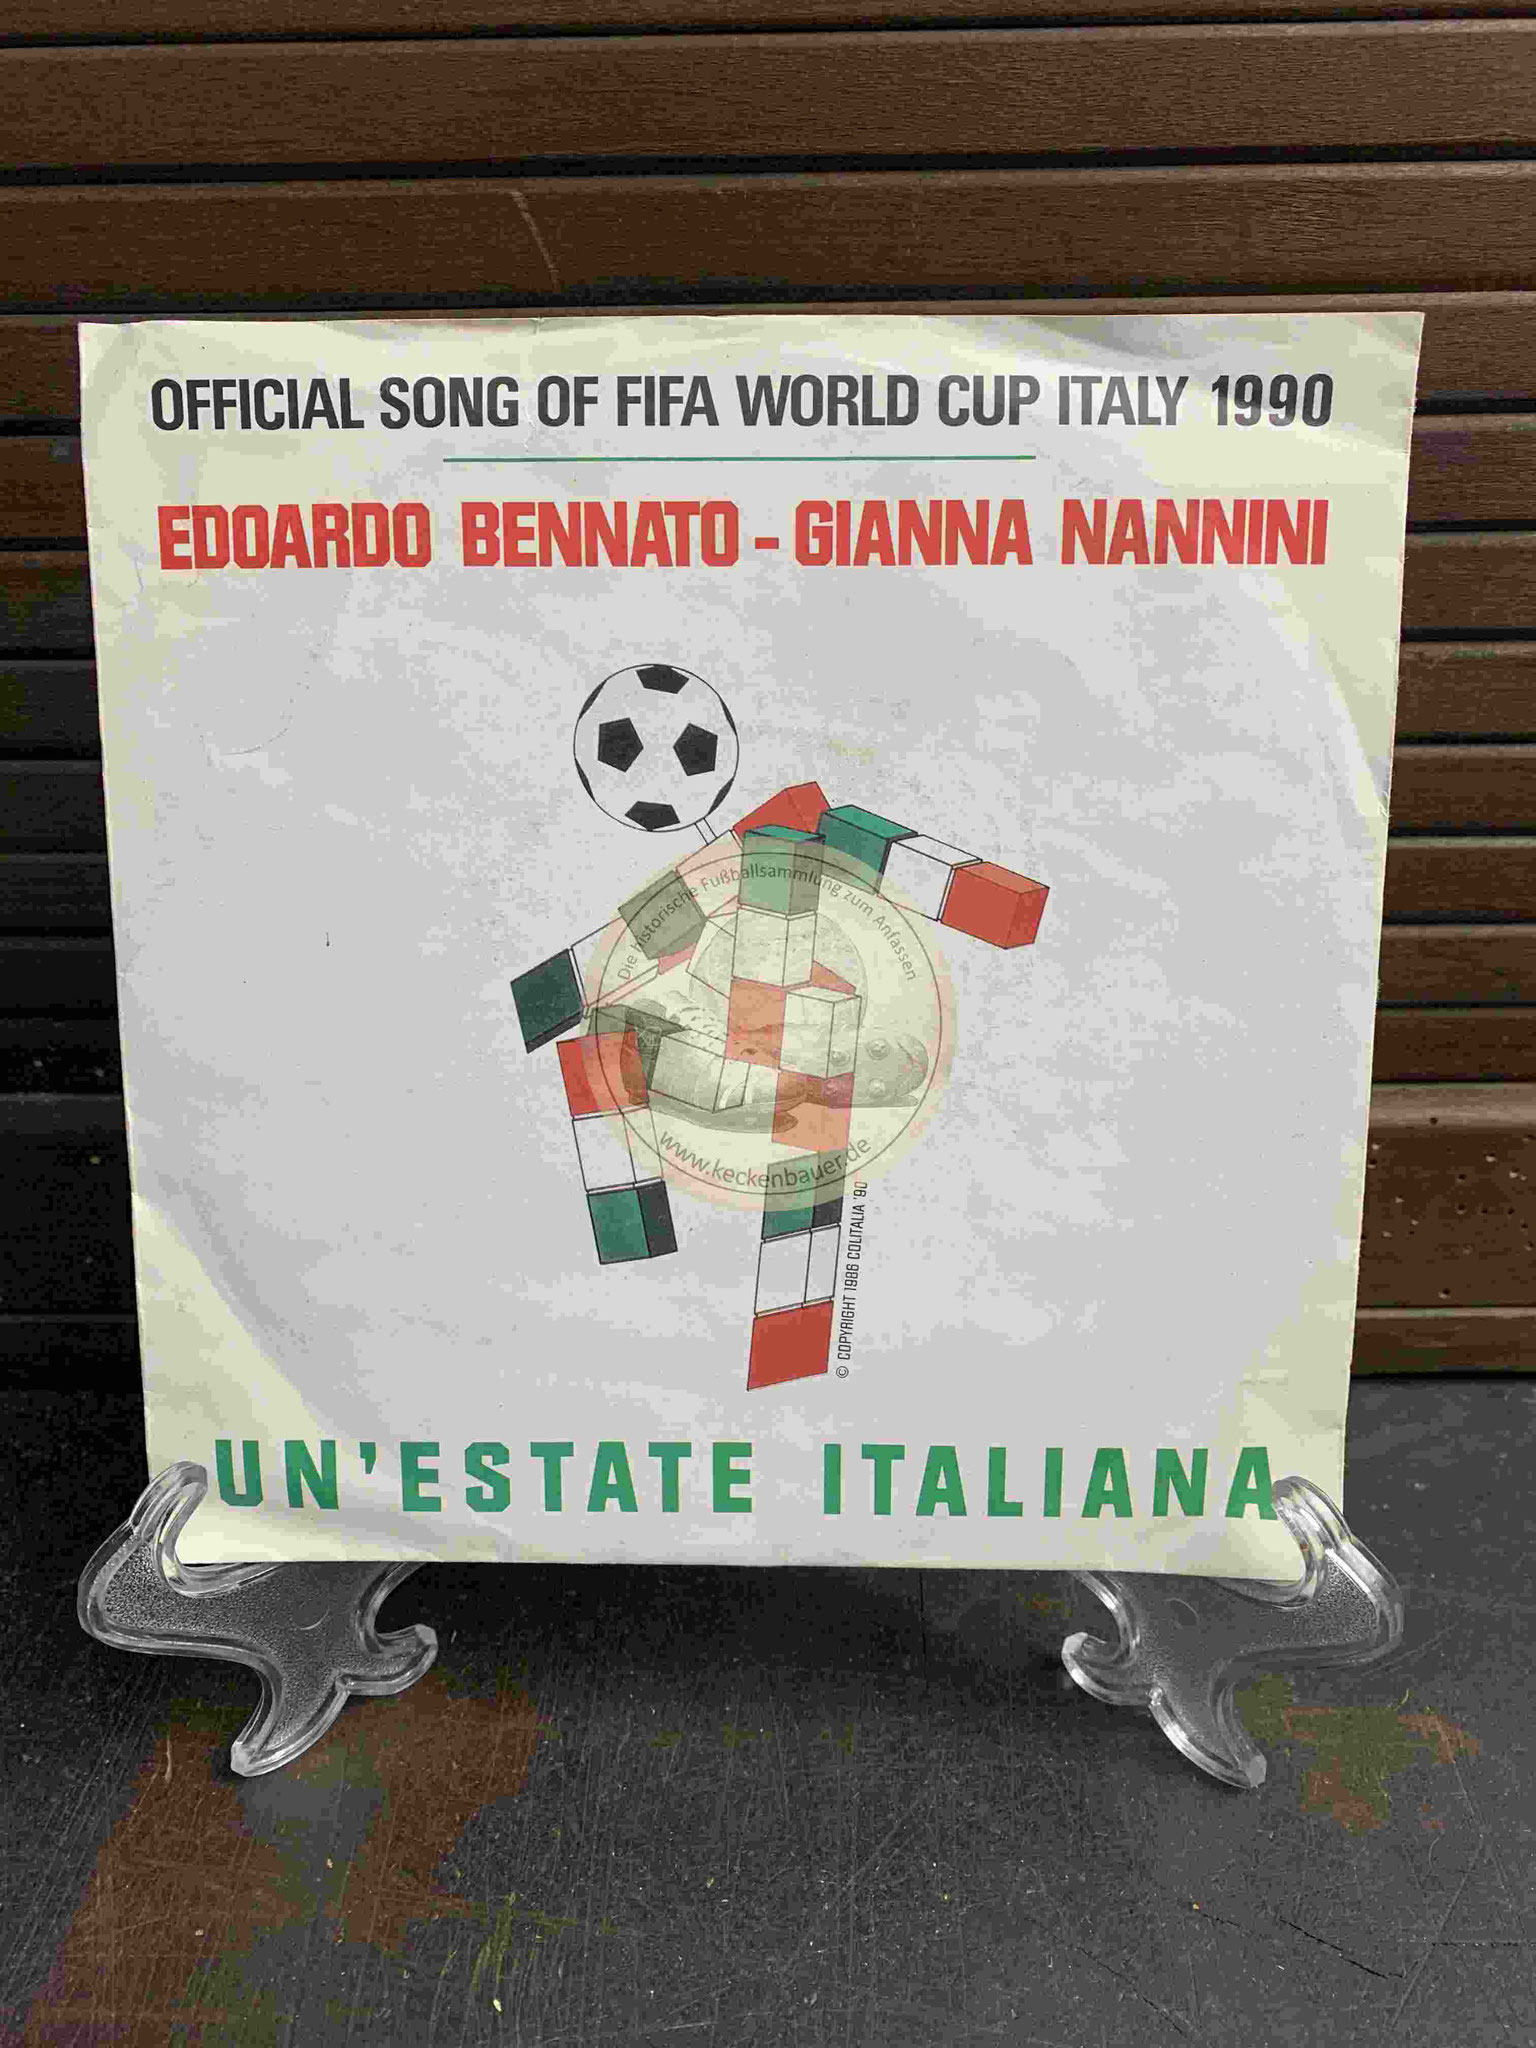 1990 Offizizelle Platte mit dem WM Song 1990 von Edoardo Bennato und Gianna Nannini